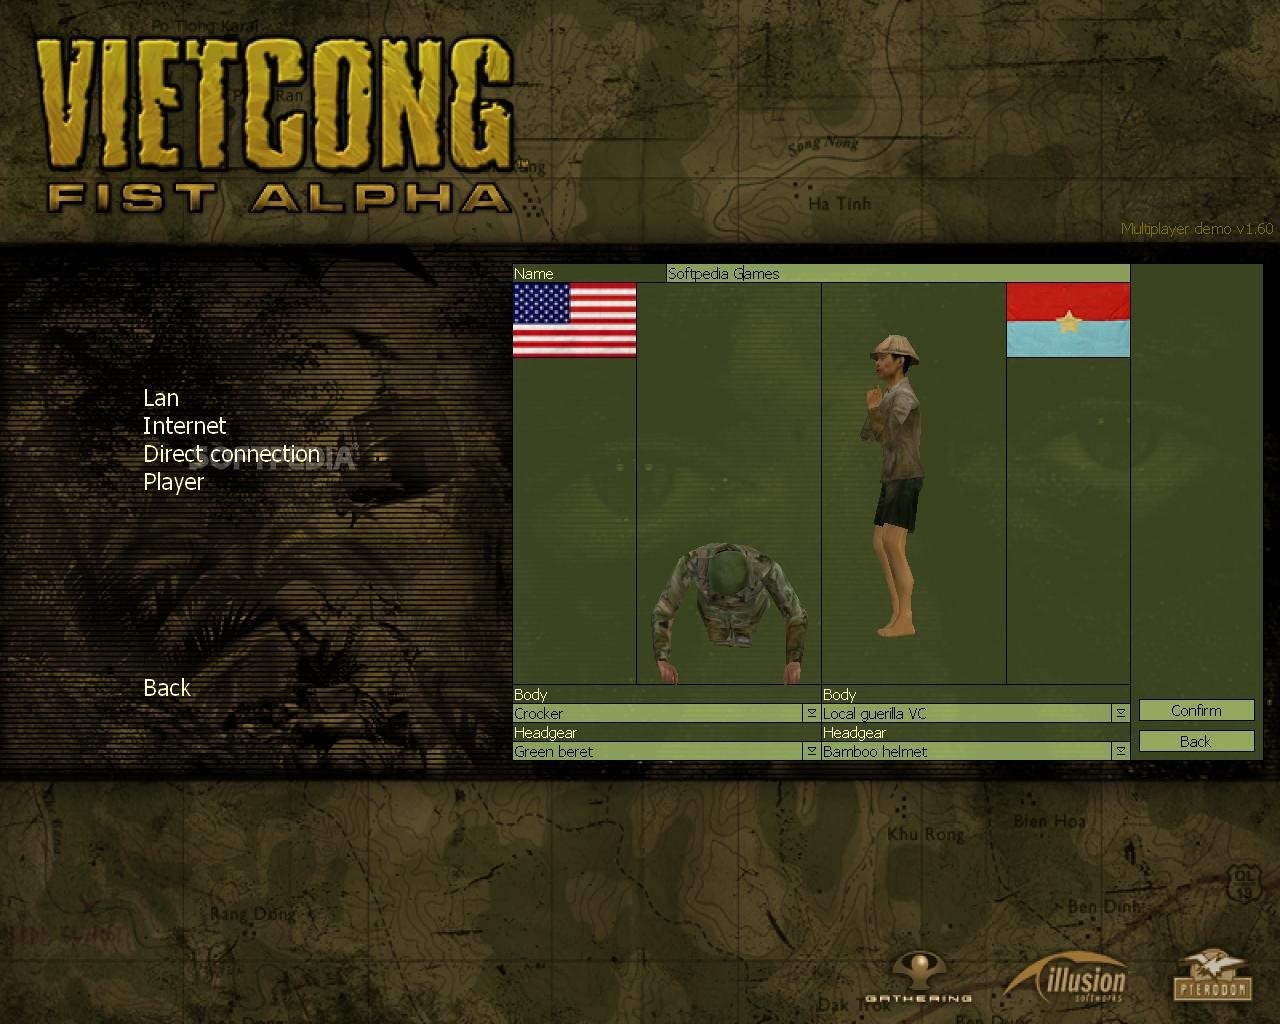 Vietcong fist alpha multiplayer demo